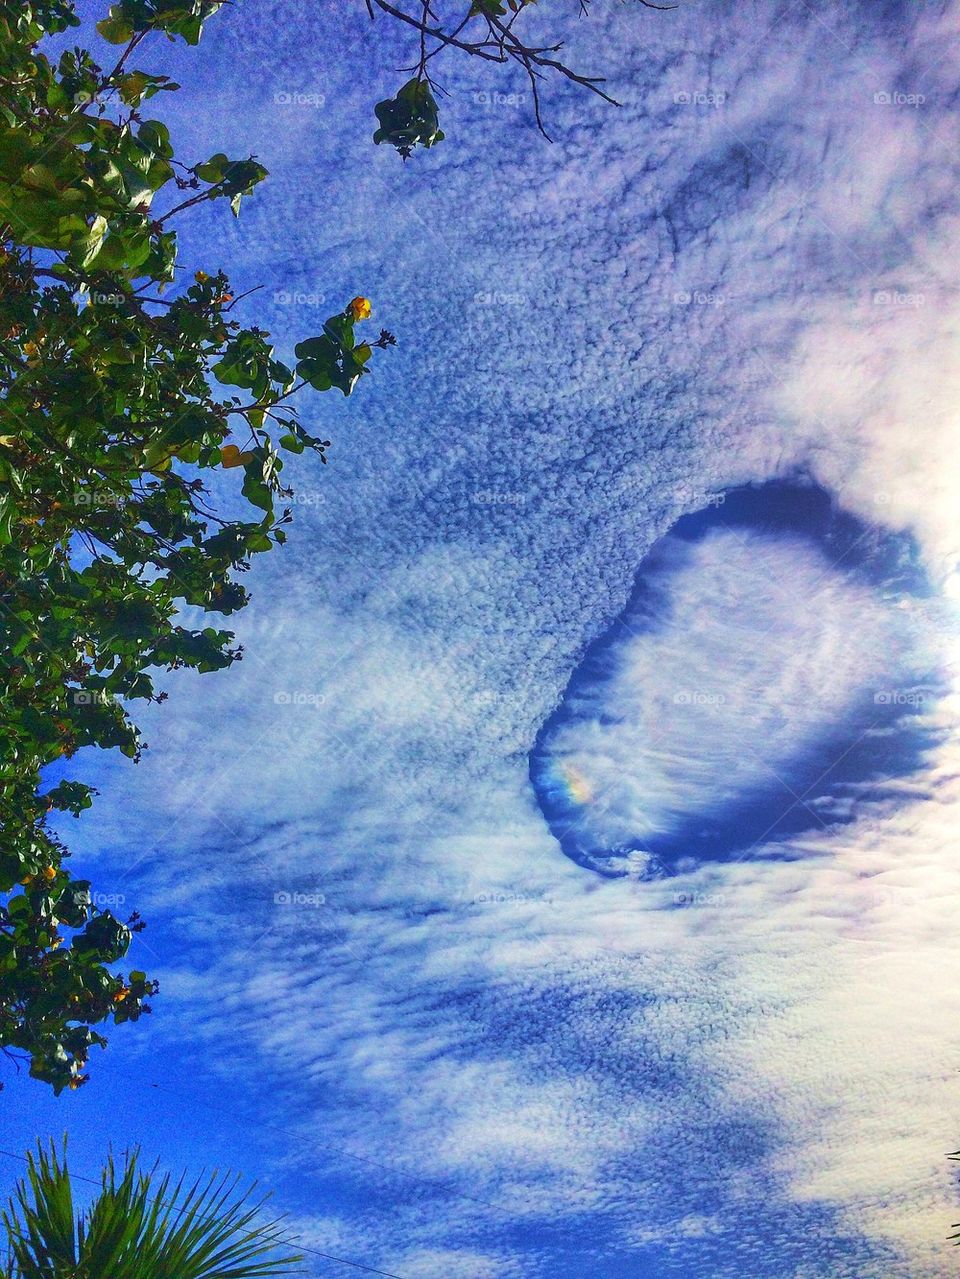 Strange cloud formation